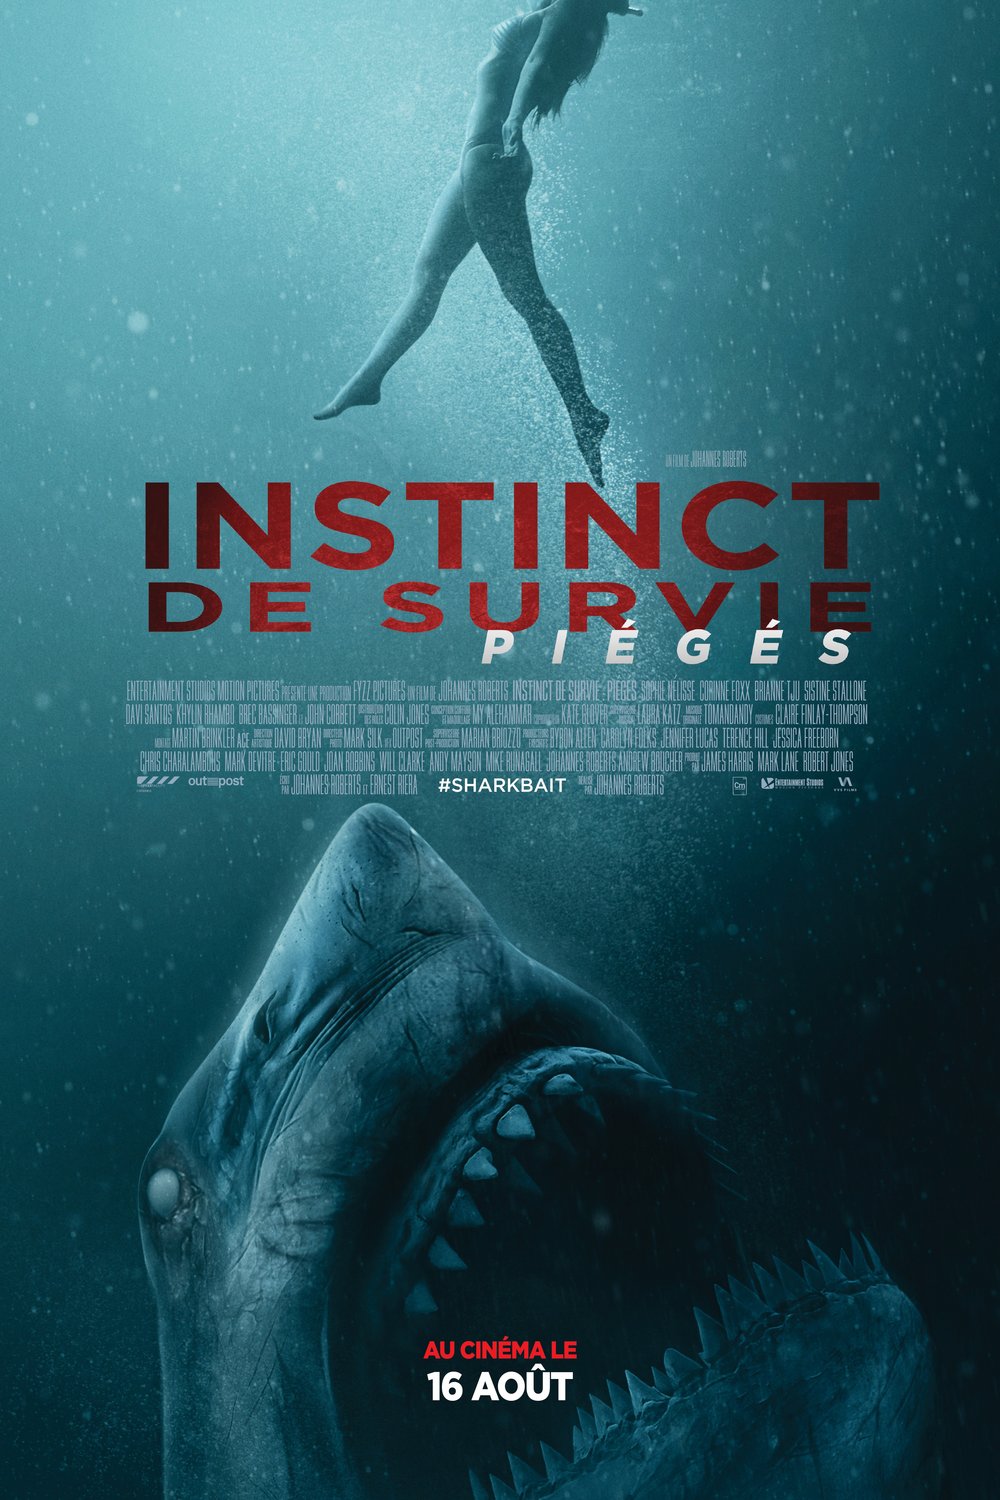 Poster of the movie Instinct de survie: Piégés